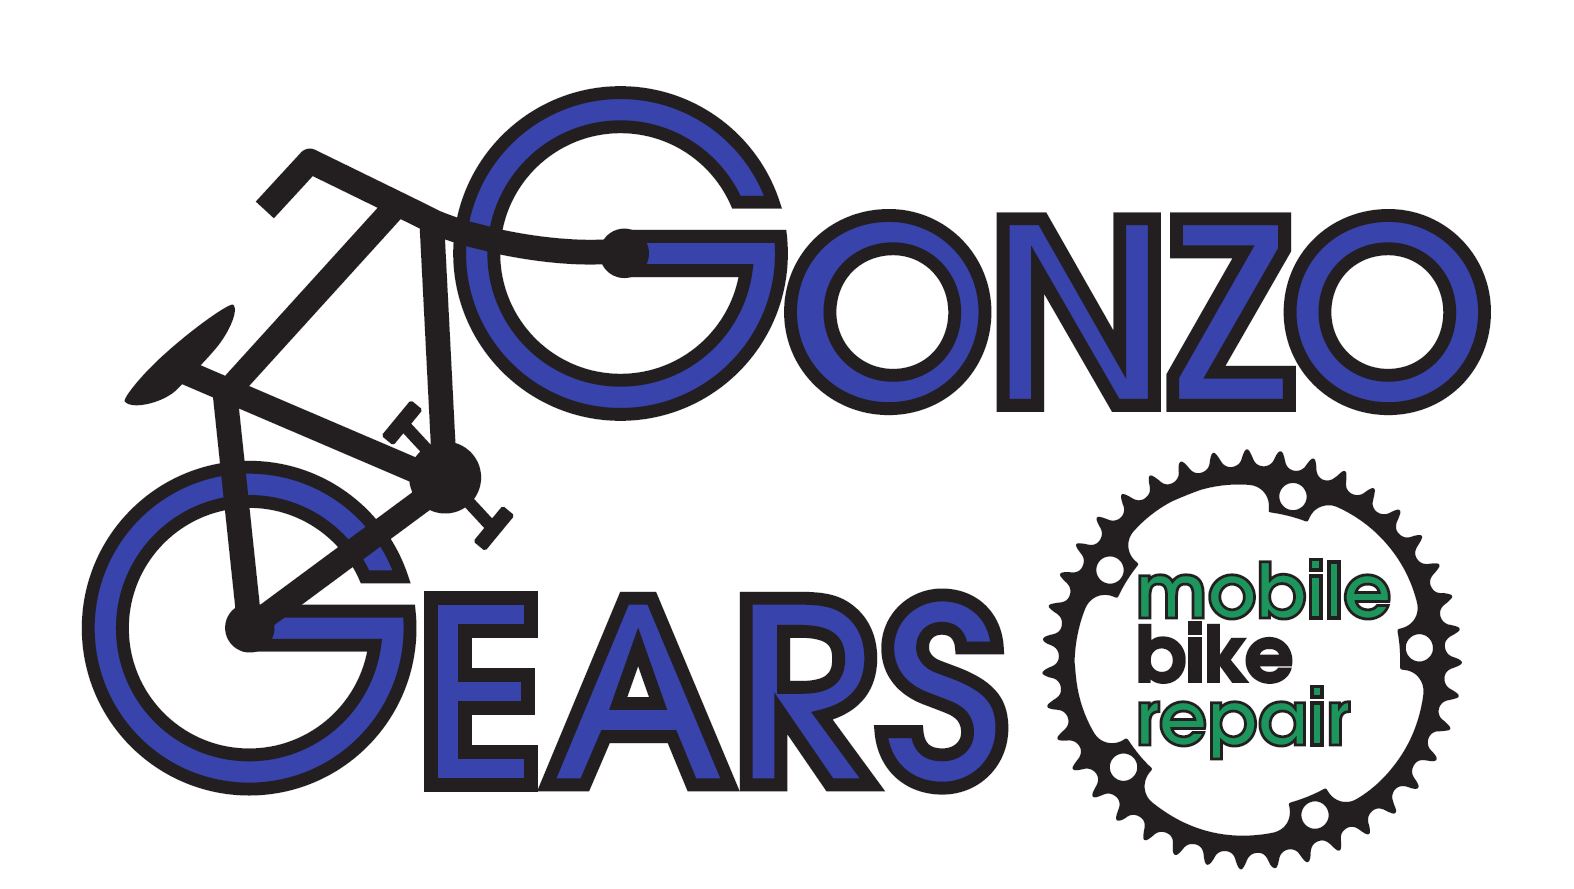 Gonzo Gears